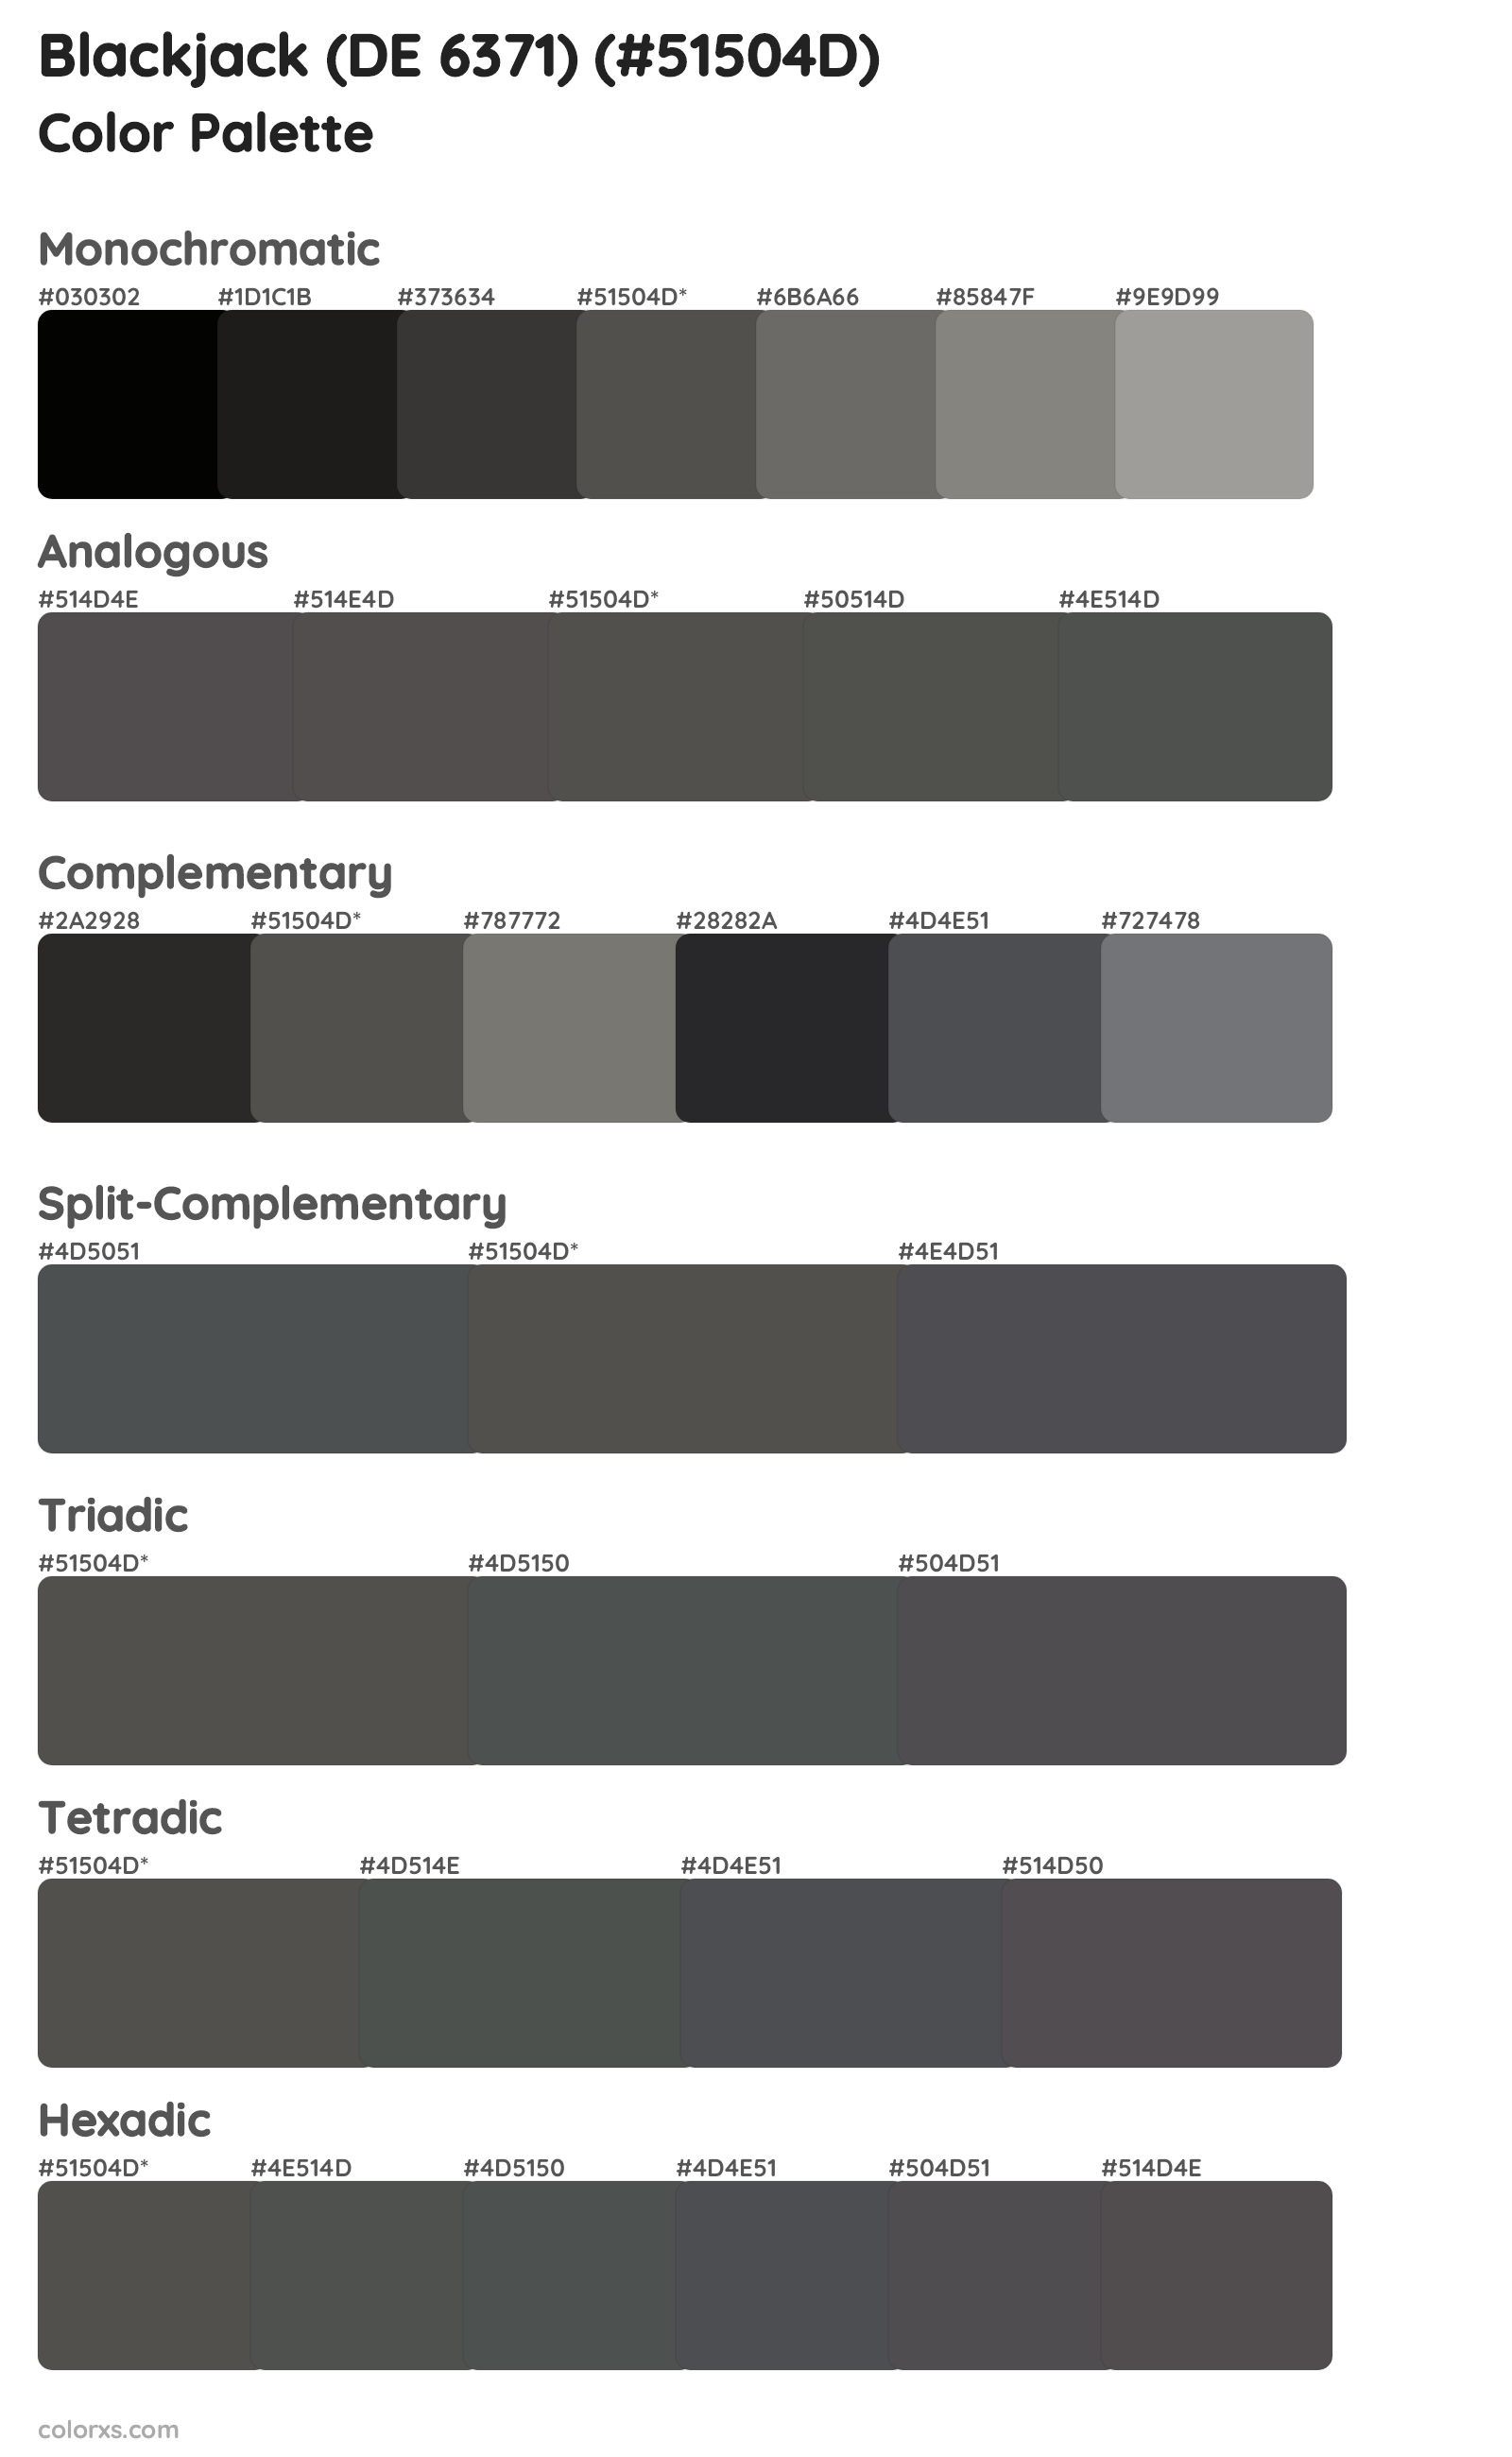 Blackjack (DE 6371) Color Scheme Palettes